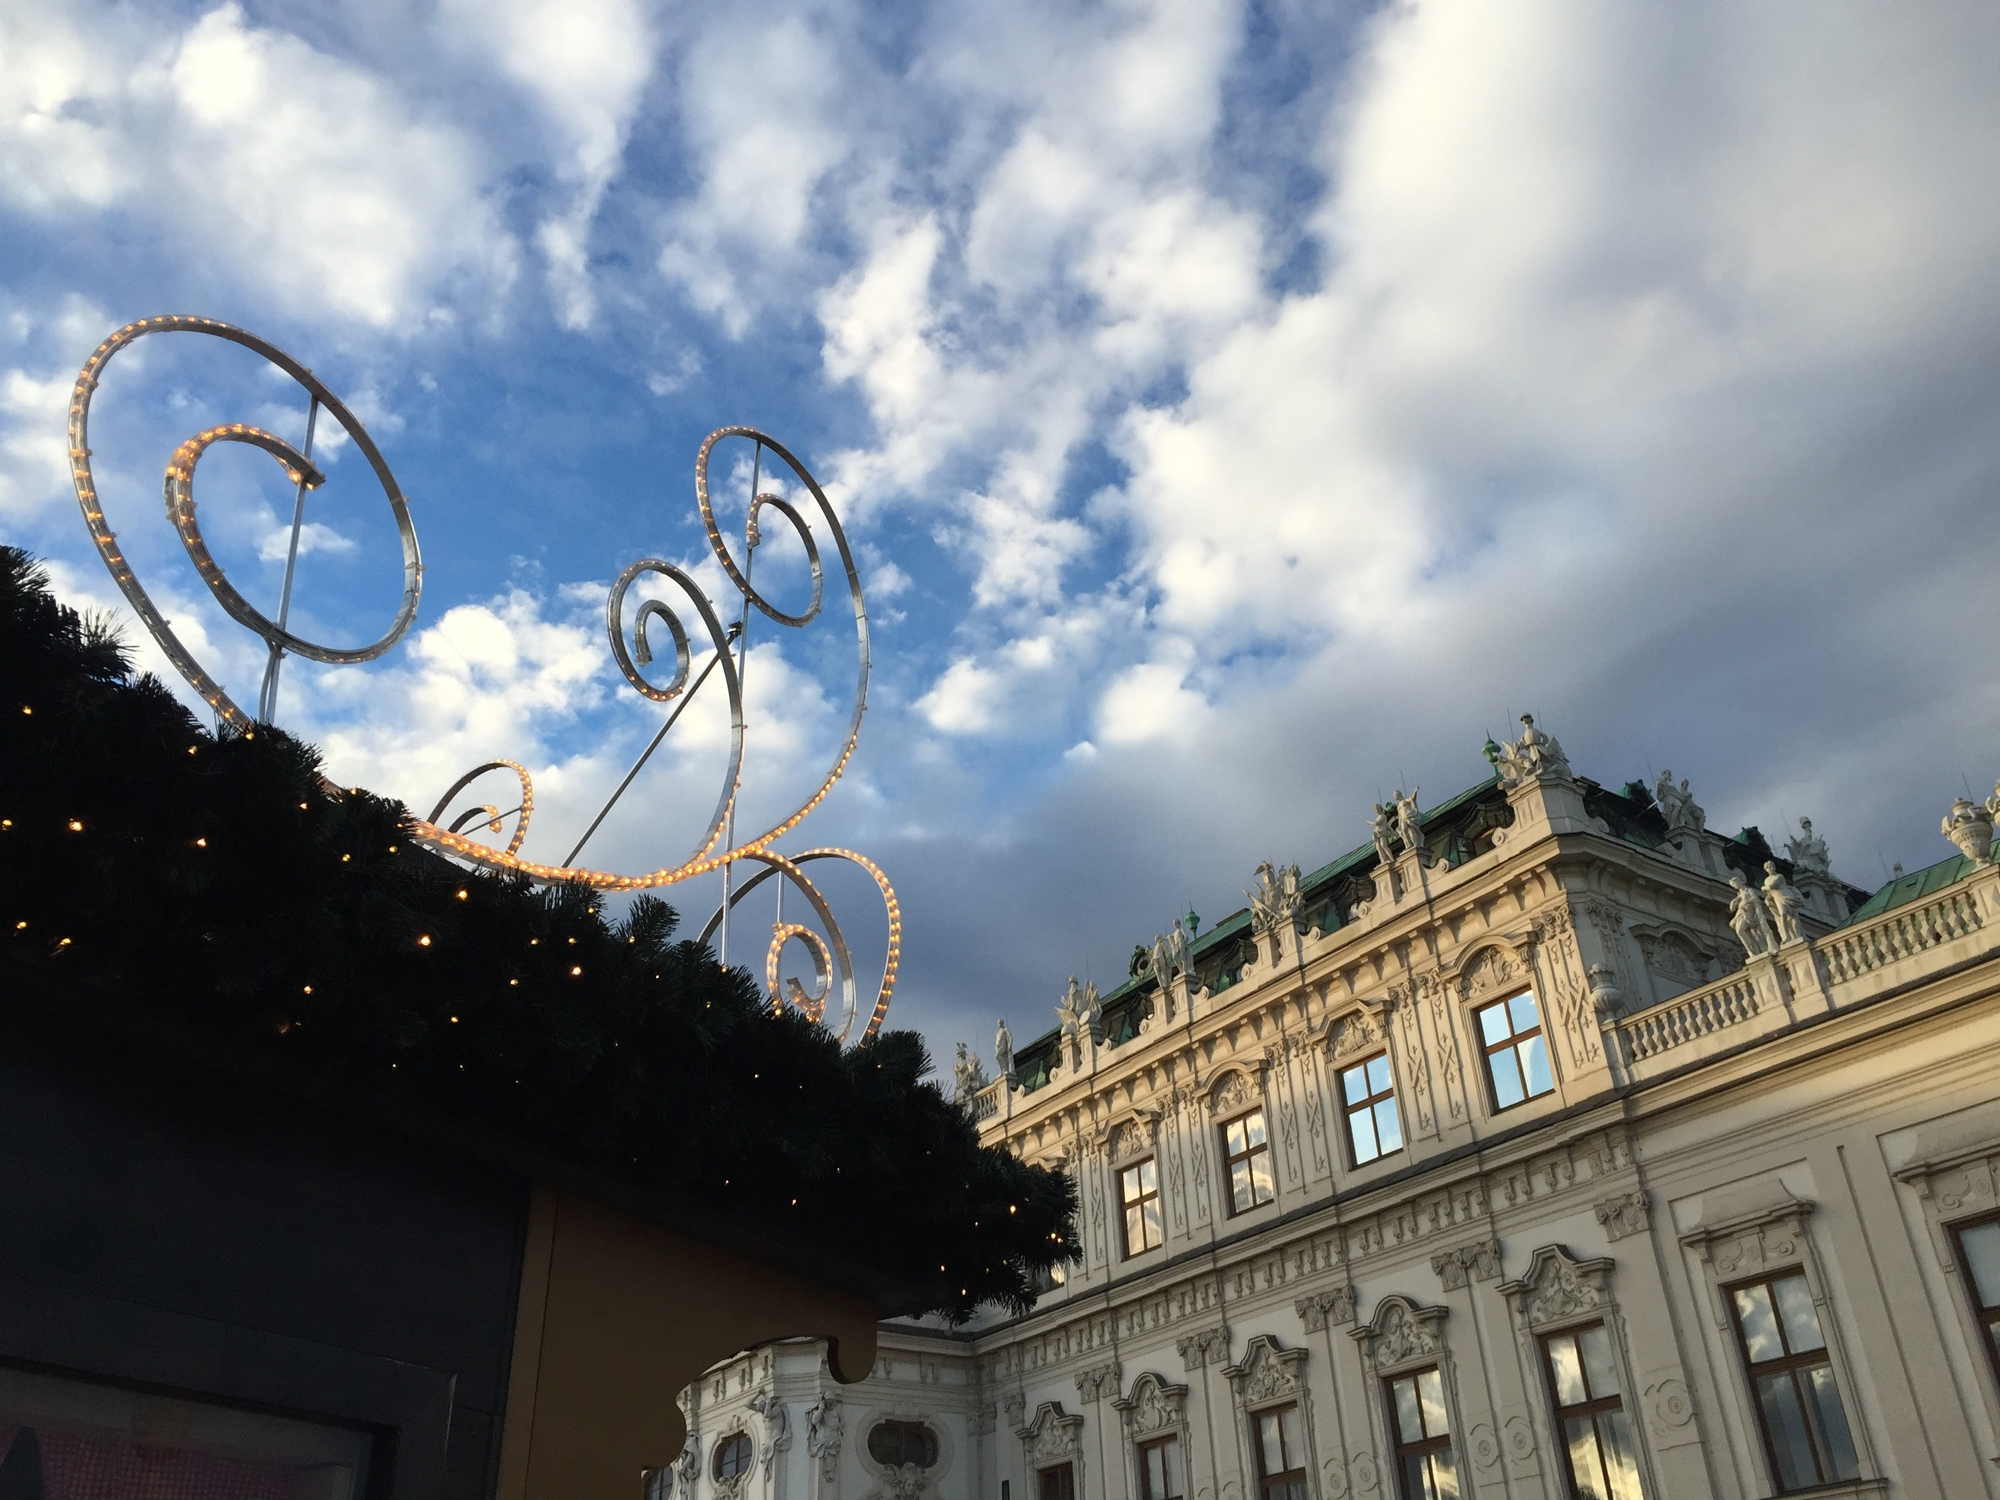 Weihnachtsdorf vor dem Schloss Belvedere, Standdeko und Teil des Gebäudes vor dem bewölkten Himmel